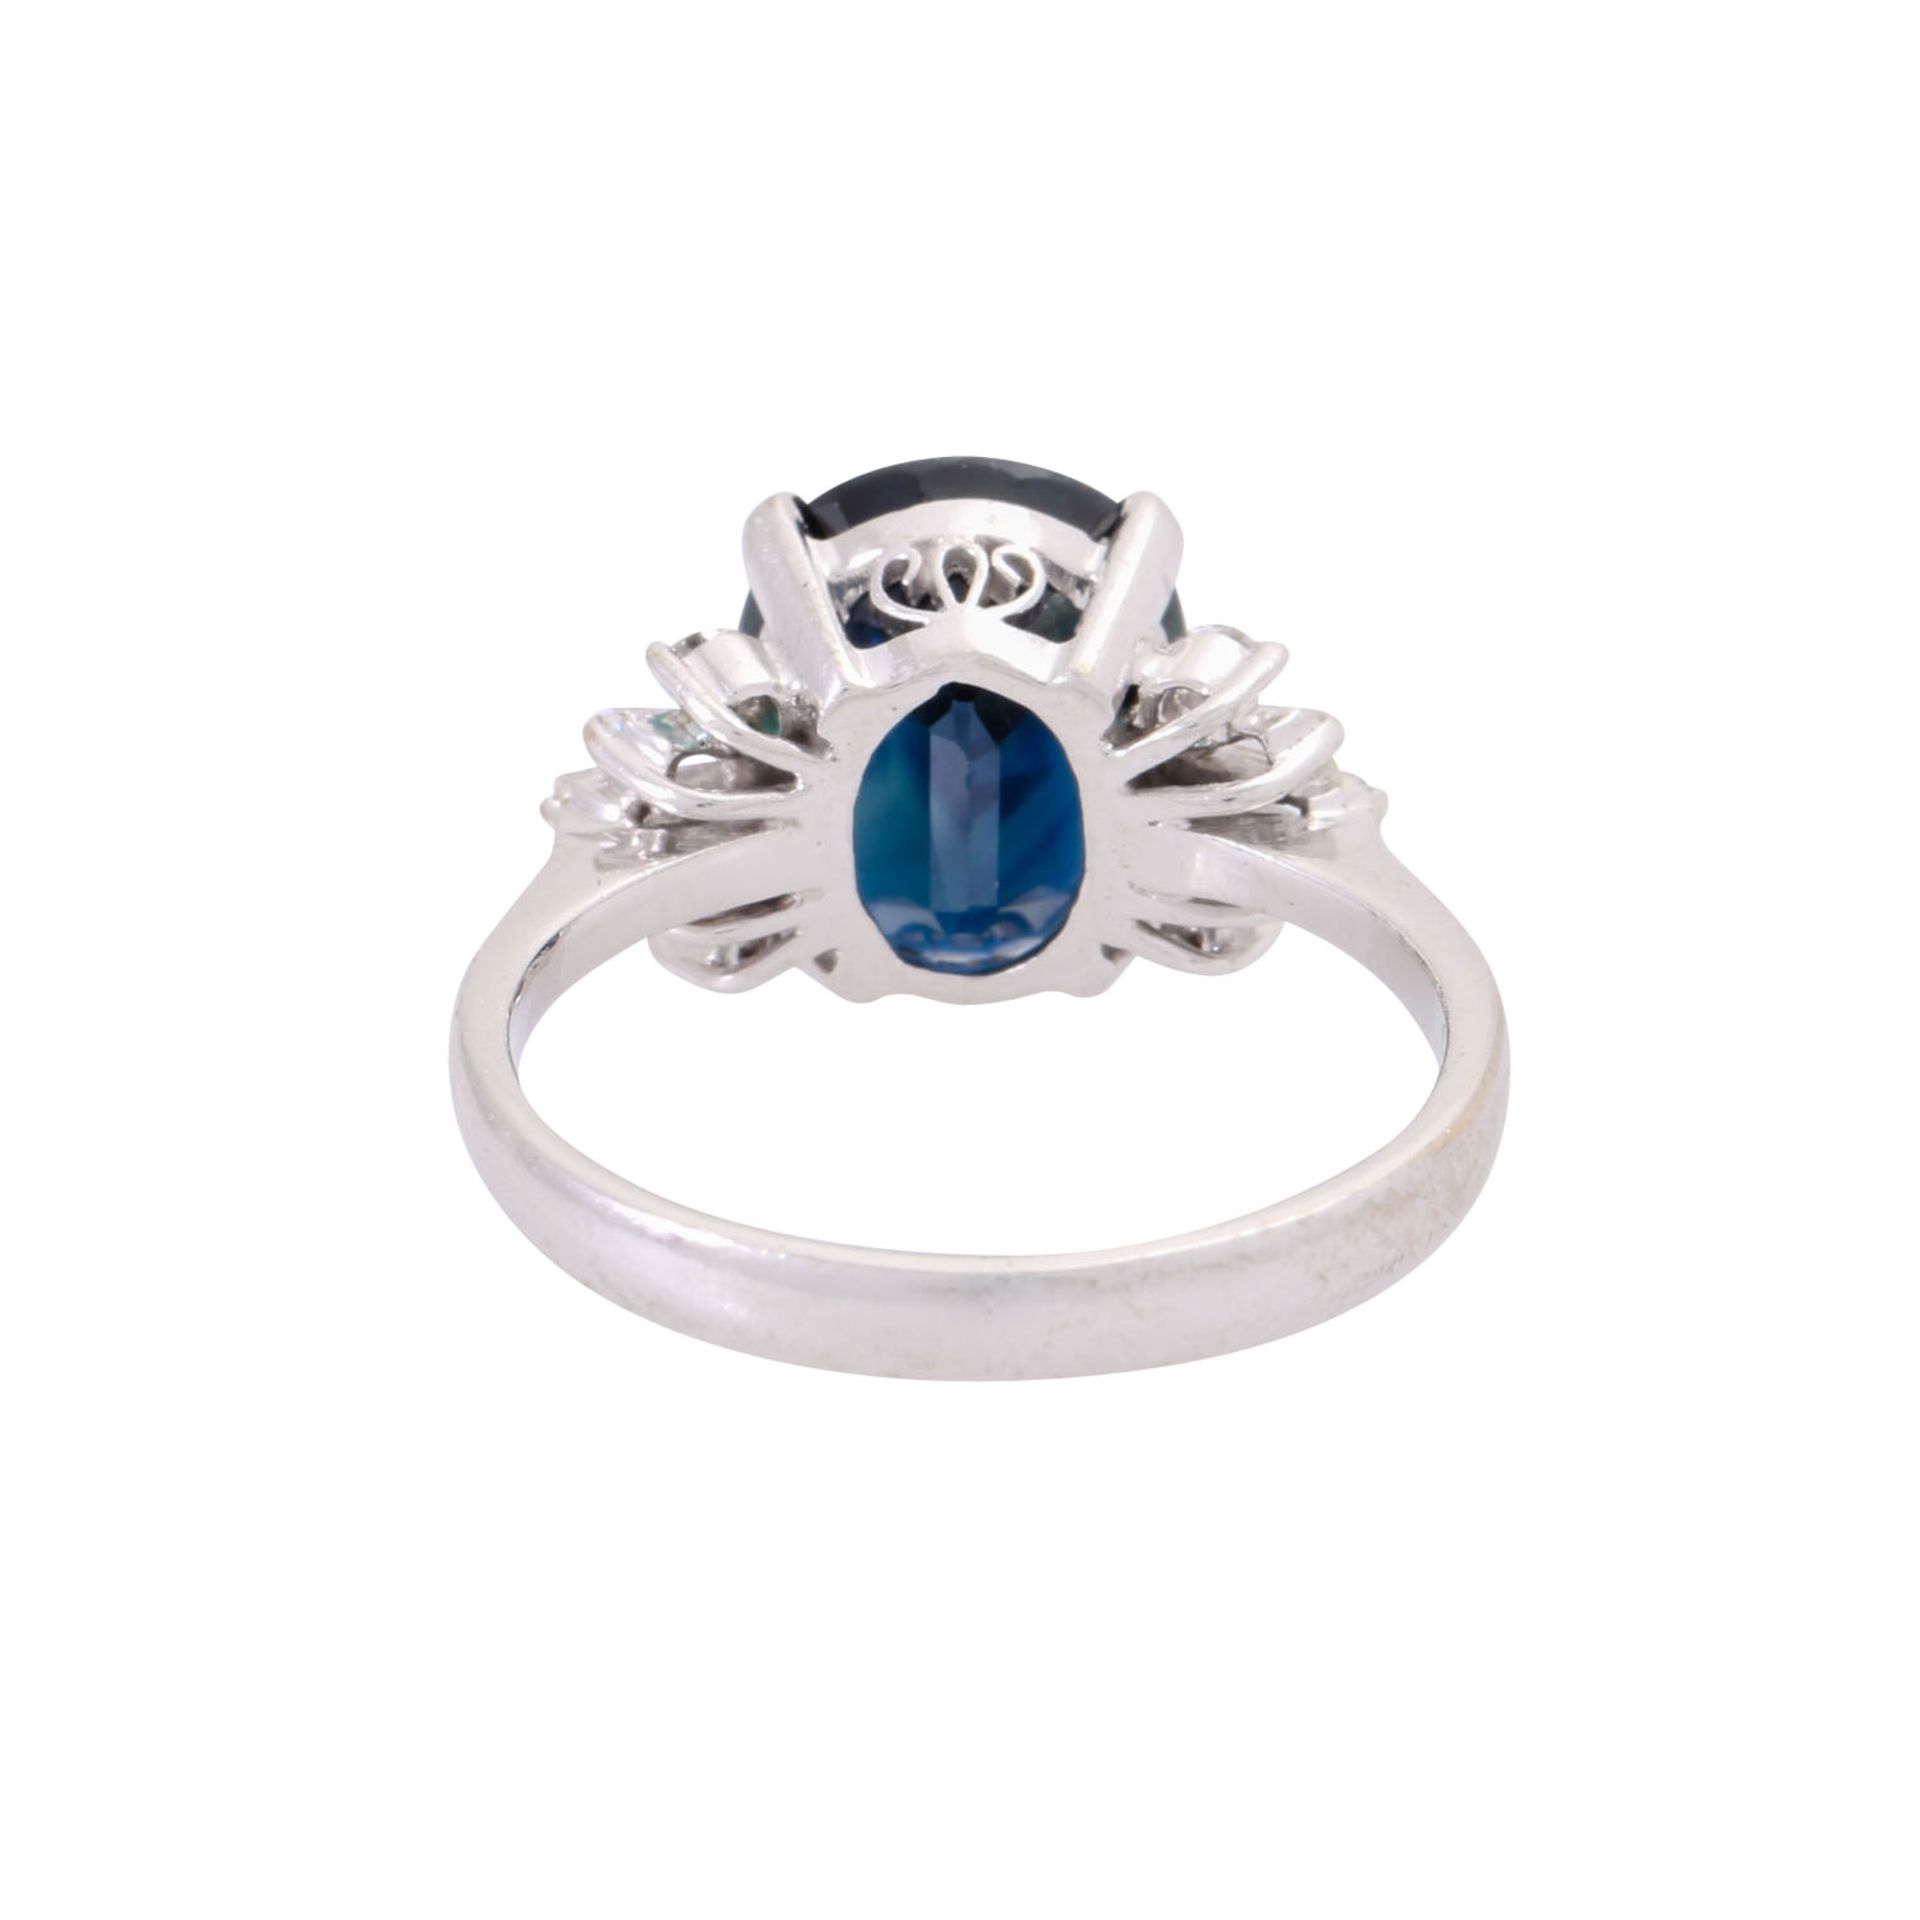 Ring mit oval facettiertem Saphir ca. 4,5 ct und Diamanten zus. ca. 0,25 ct, - Bild 3 aus 3